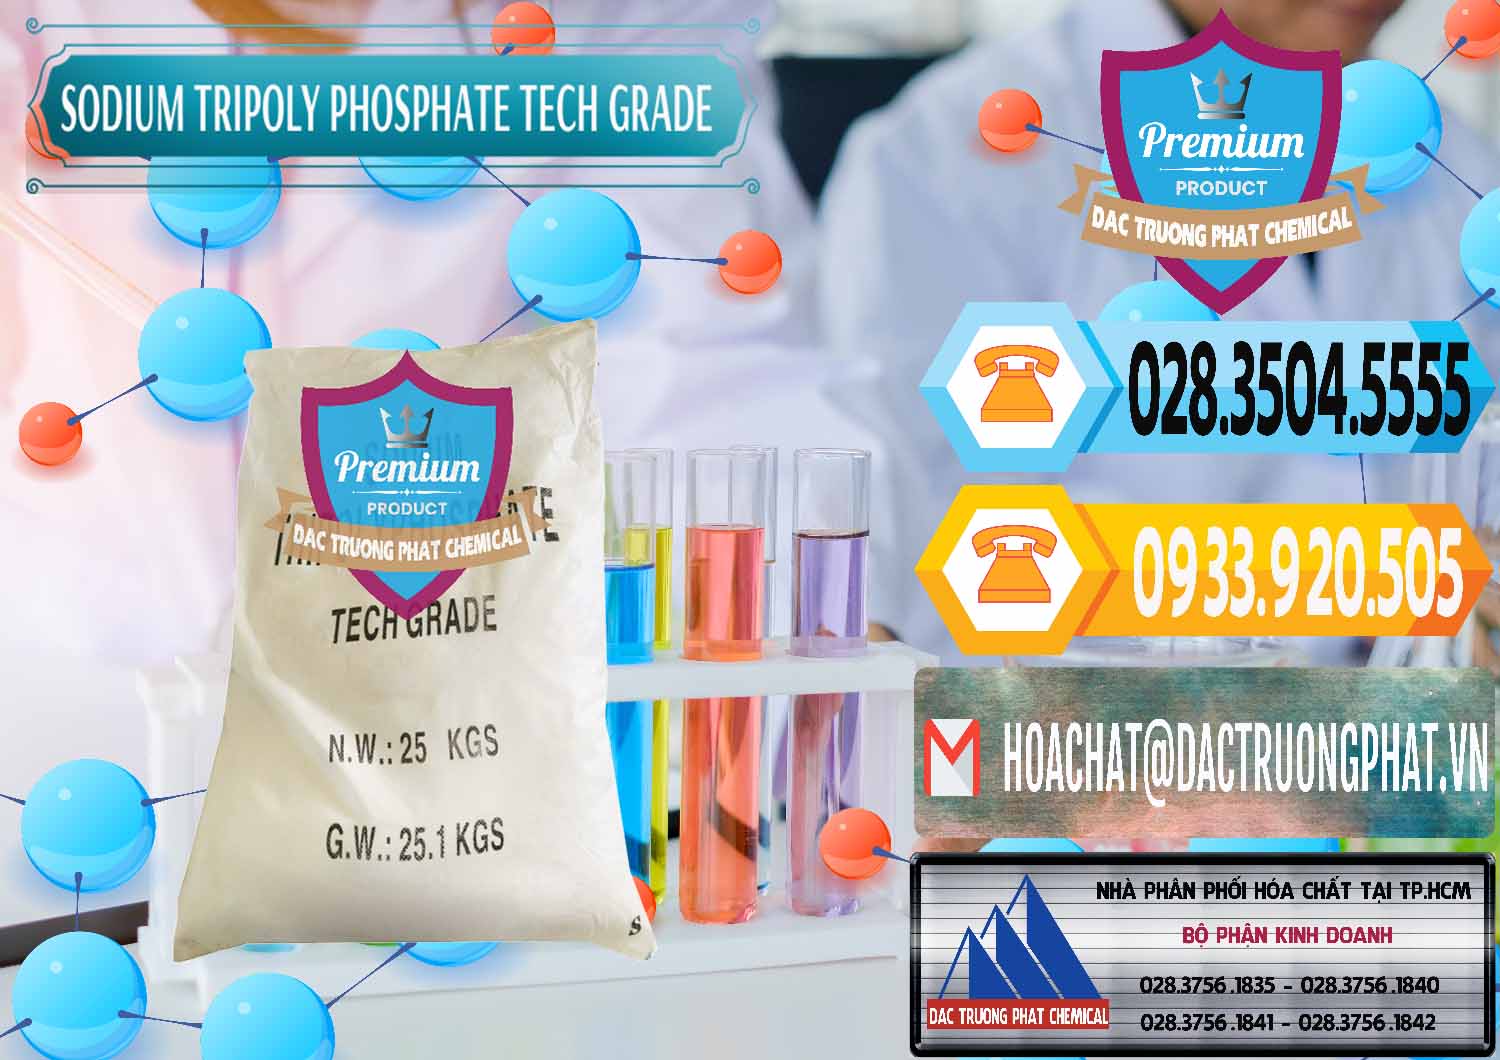 Đơn vị bán ( phân phối ) Sodium Tripoly Phosphate - STPP Tech Grade Trung Quốc China - 0453 - Công ty kinh doanh & cung cấp hóa chất tại TP.HCM - hoachattayrua.net